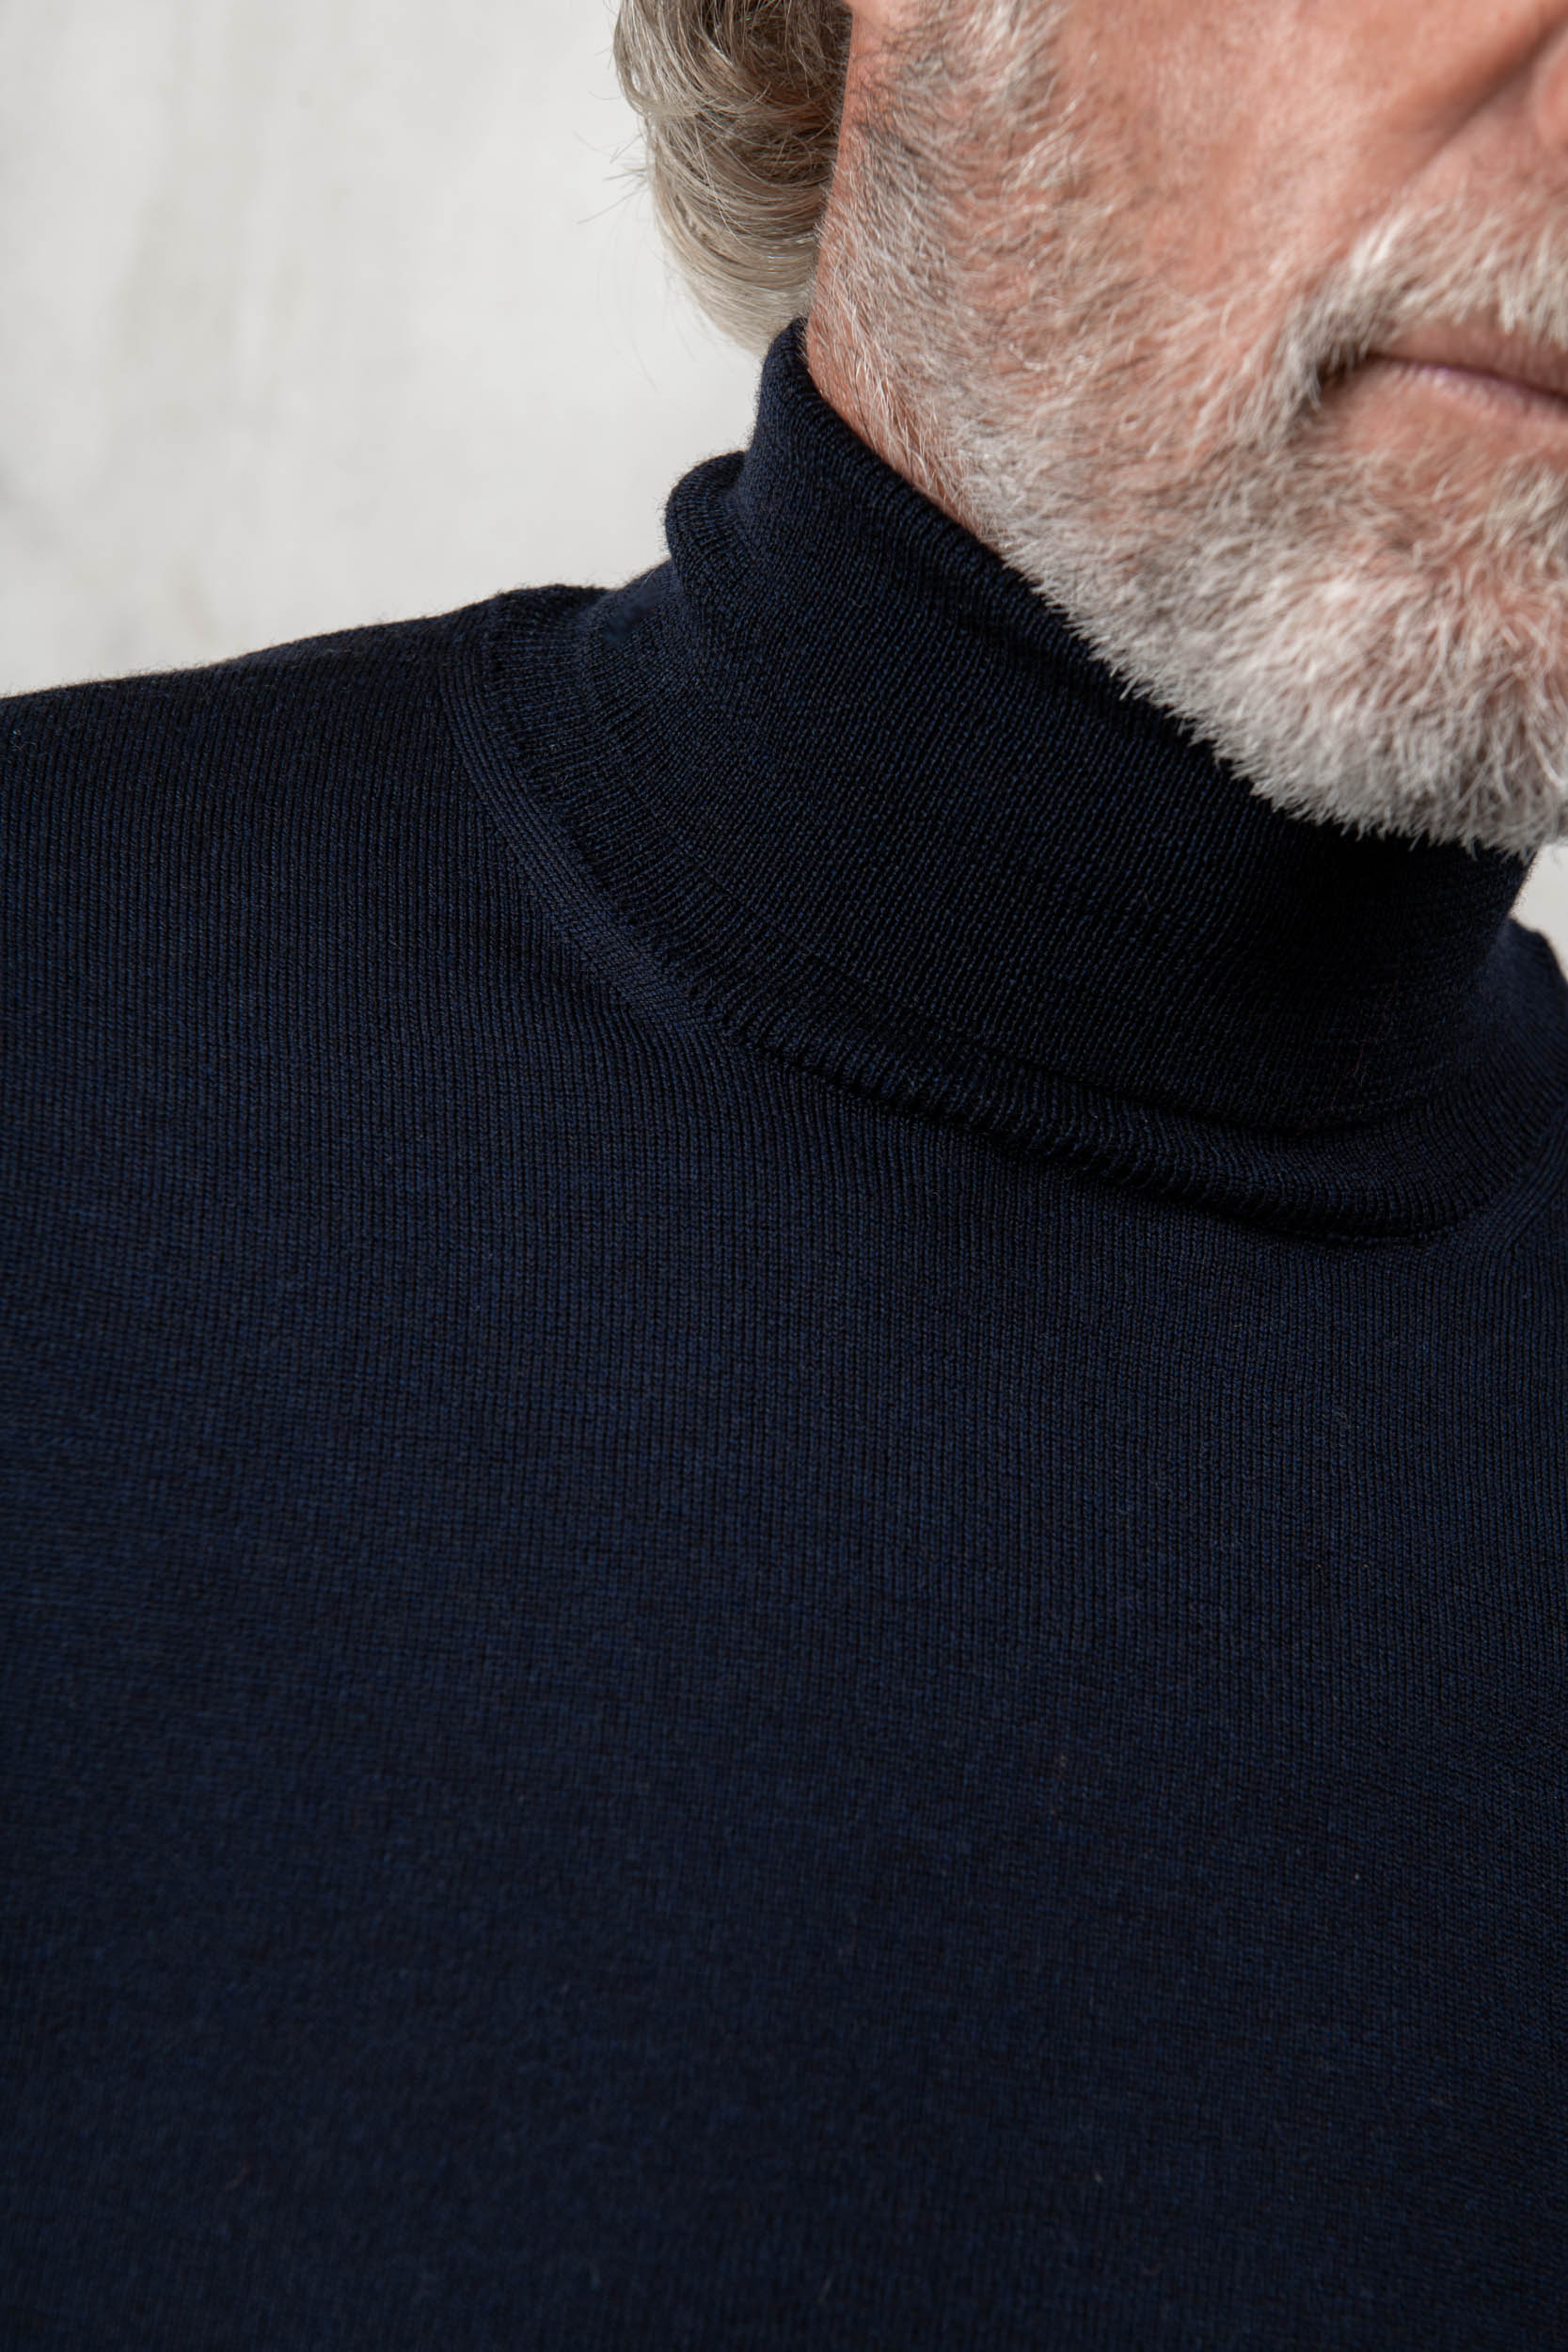 Dolcevita in lana merino blu – Made in Italy